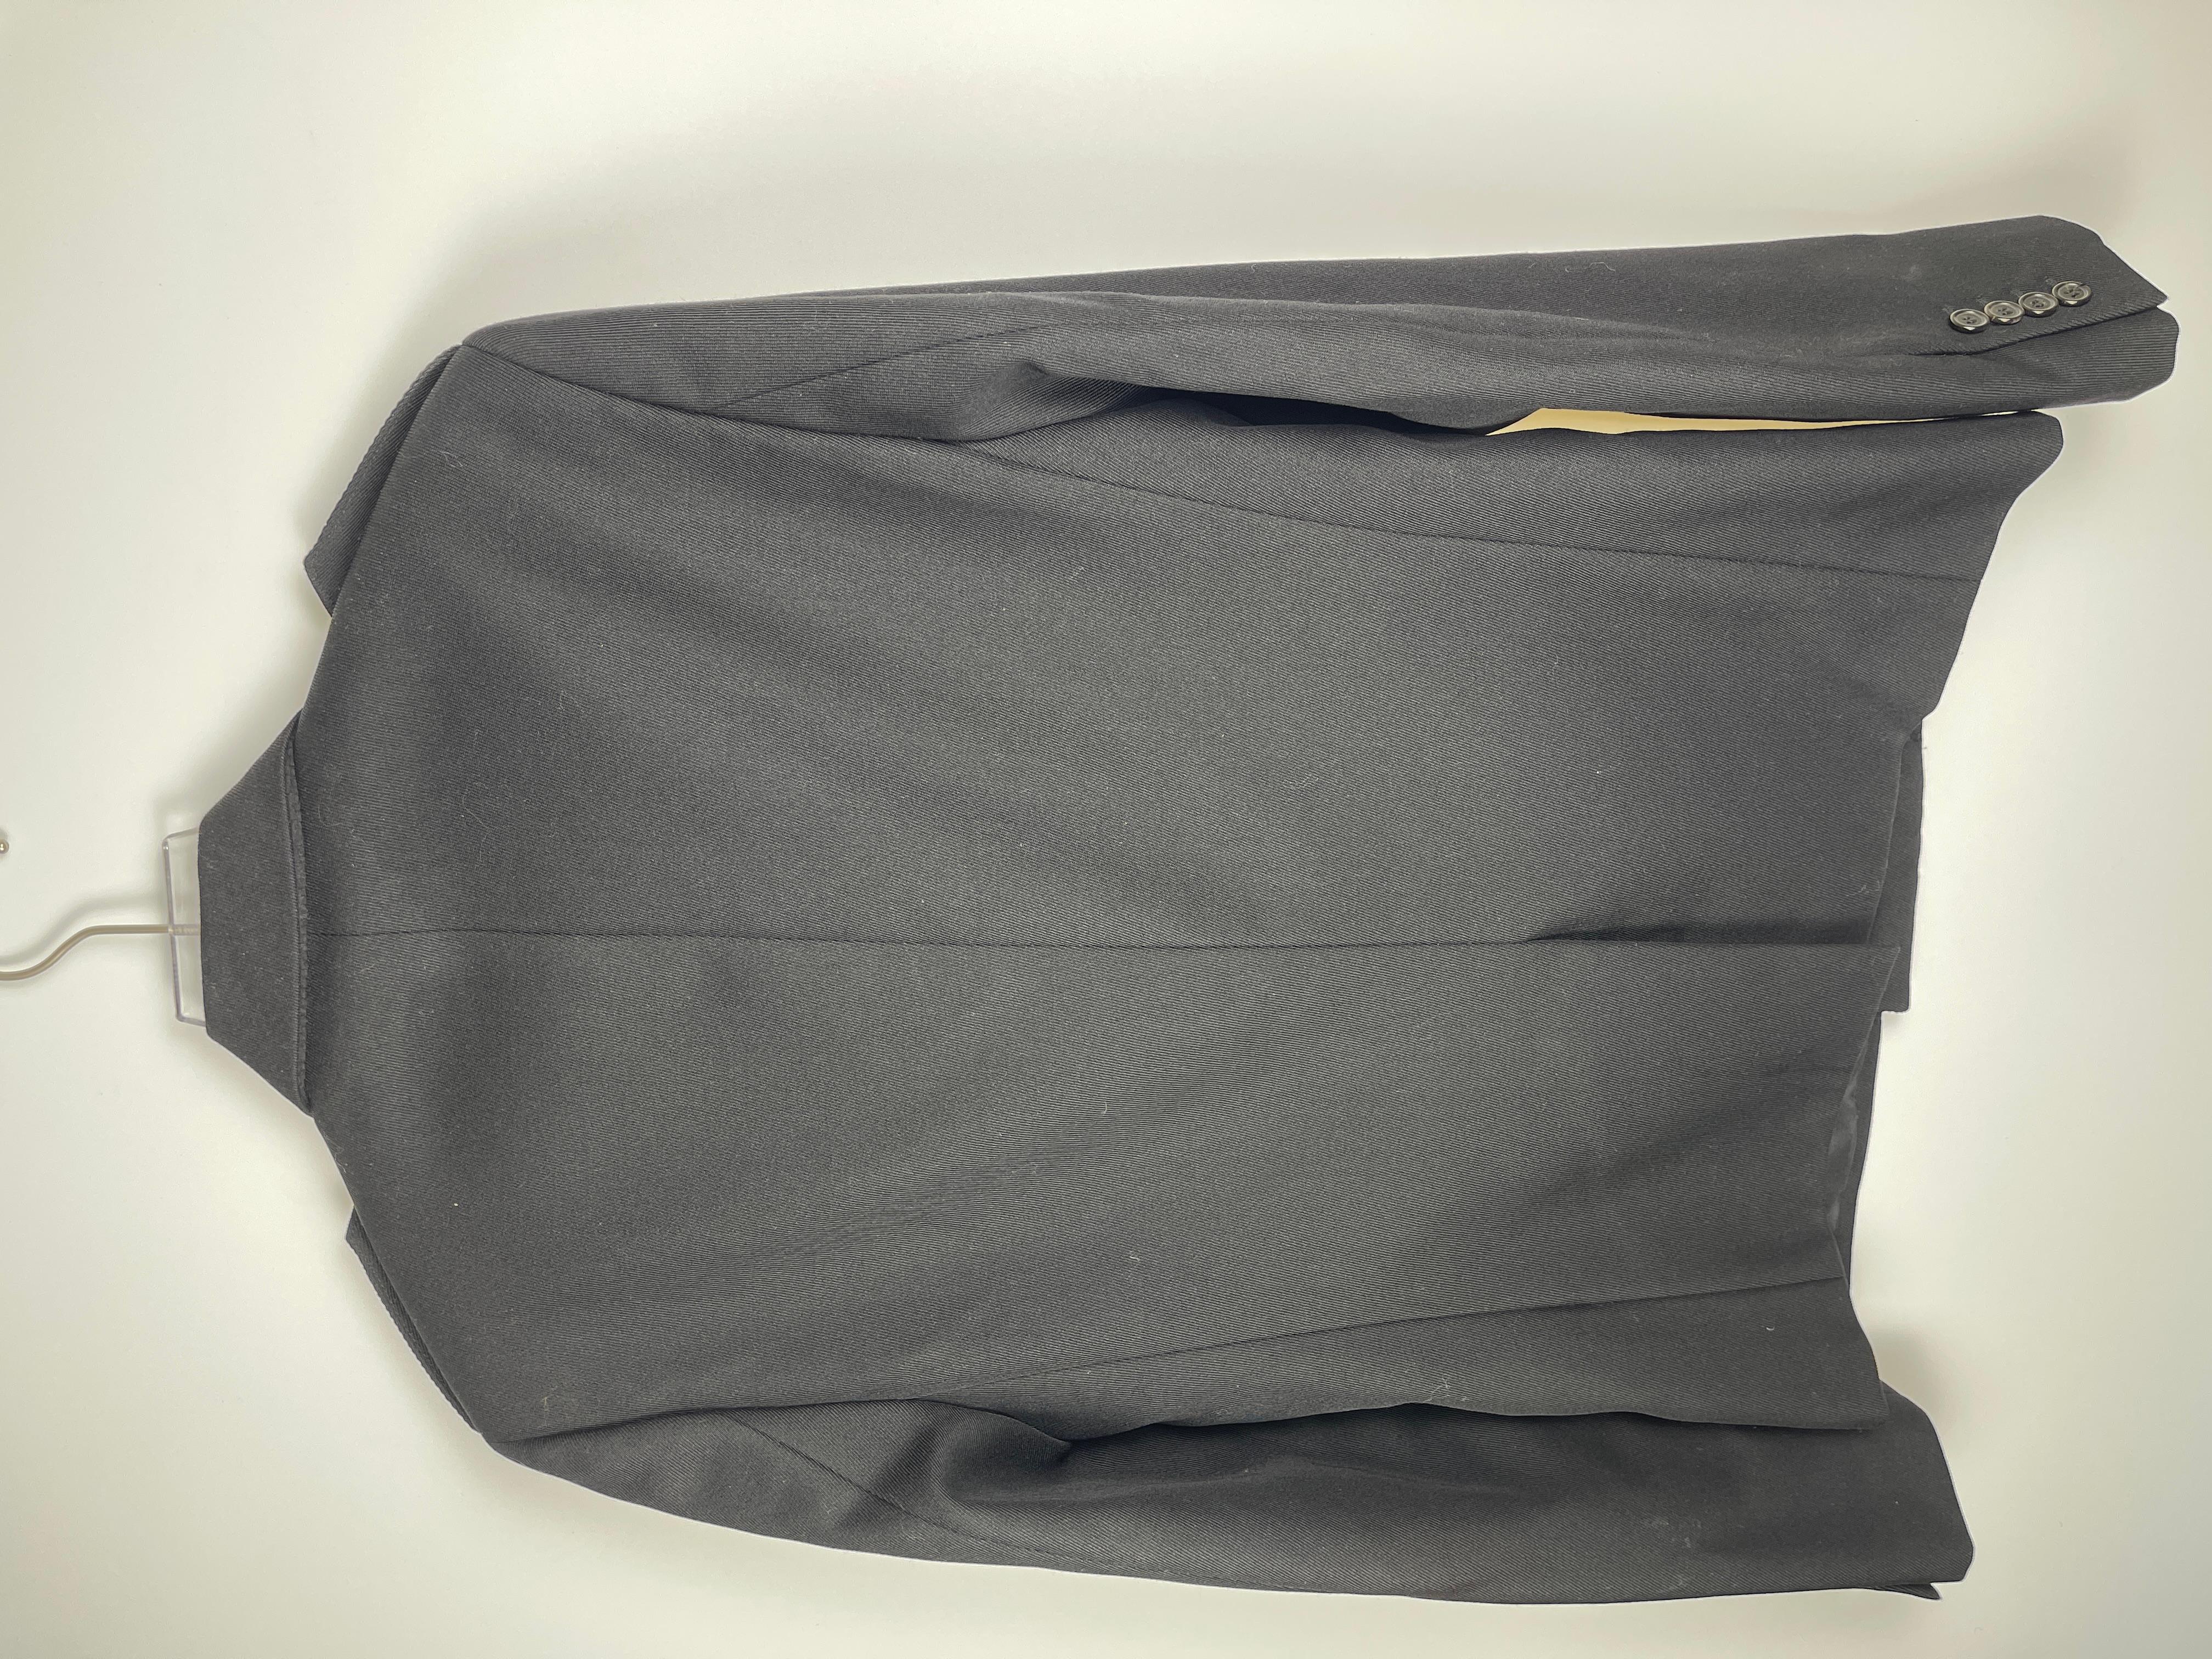 Une pièce de l'époque de Hedi Silhouette, une silhouette élégante avec une doublure en soie et coton.

Taille : La taille indiquée est de 50, mais elle conviendrait à la fois à une taille moyenne et à une taille grande.

Condit : Tous les articles